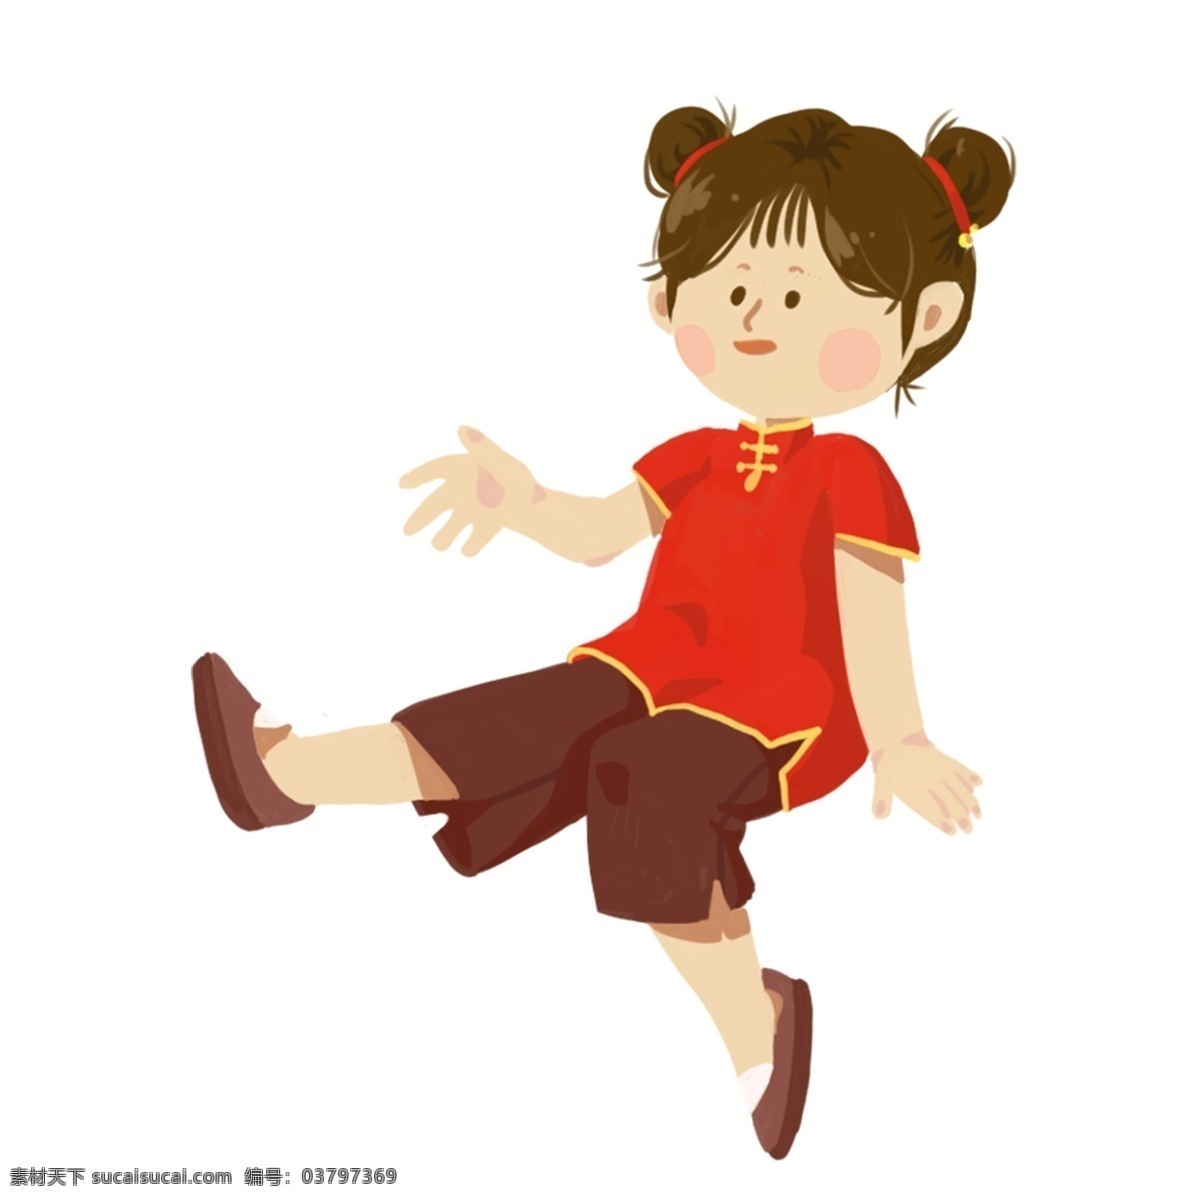 卡通 红色 衣服 女孩 免 抠 图 中国风服装 红色喜庆衣服 动漫人物 卡通动漫 小女孩 可爱 免抠图